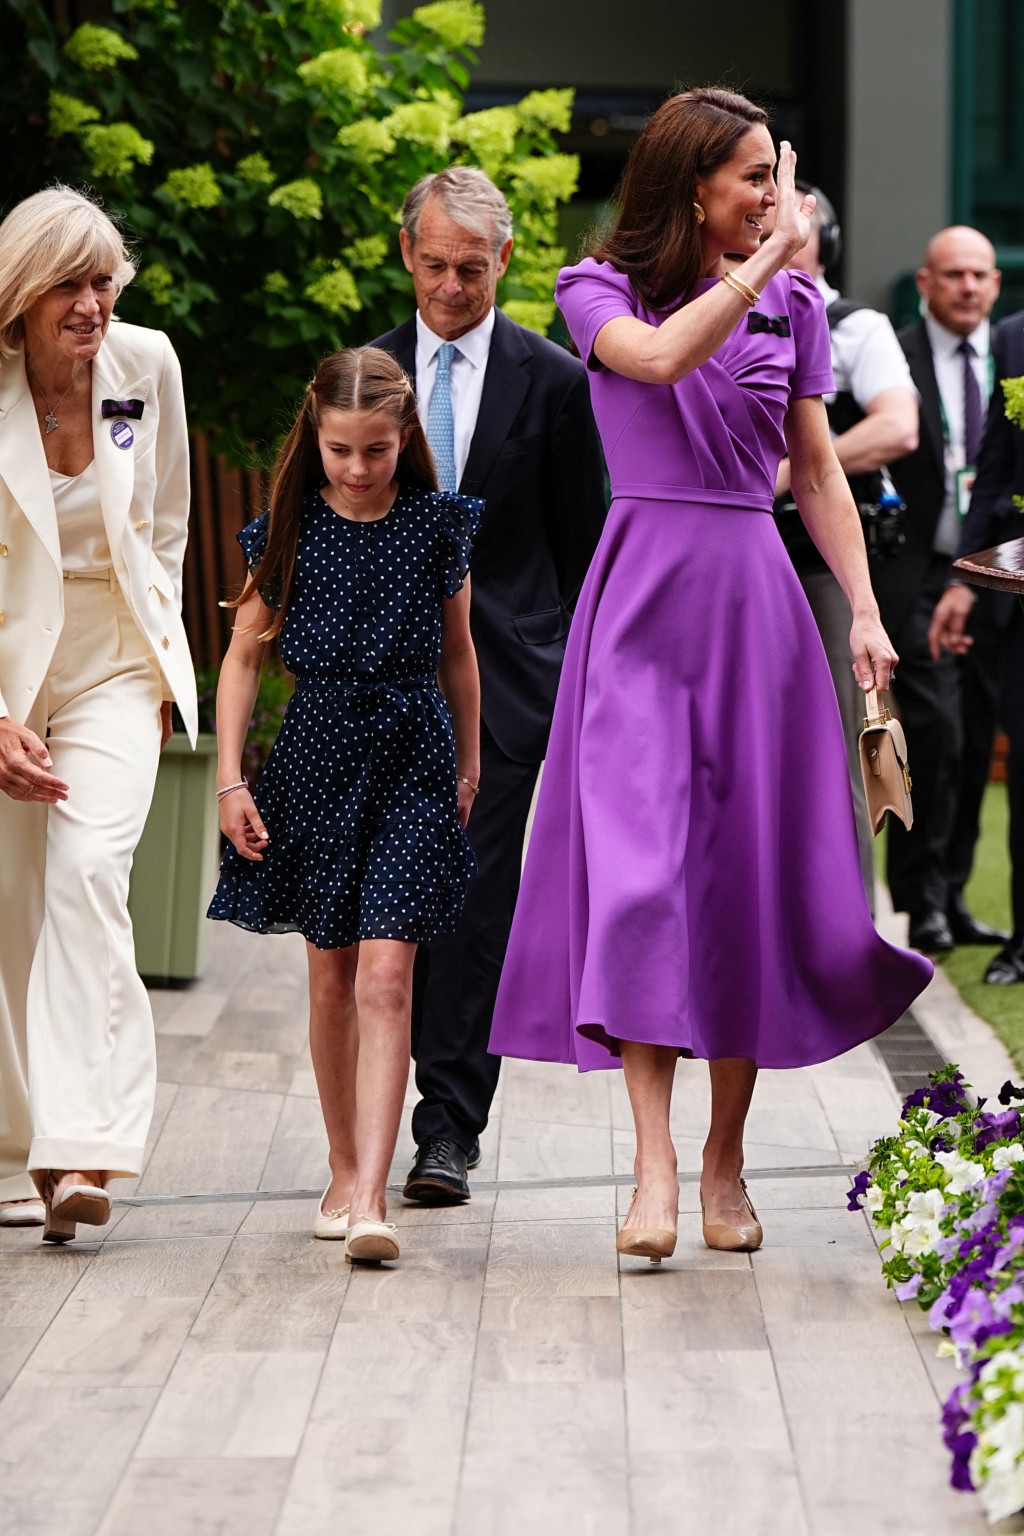 凱特身穿紫色長裙，切合溫網紫色和綠色傳統顏色。路透社